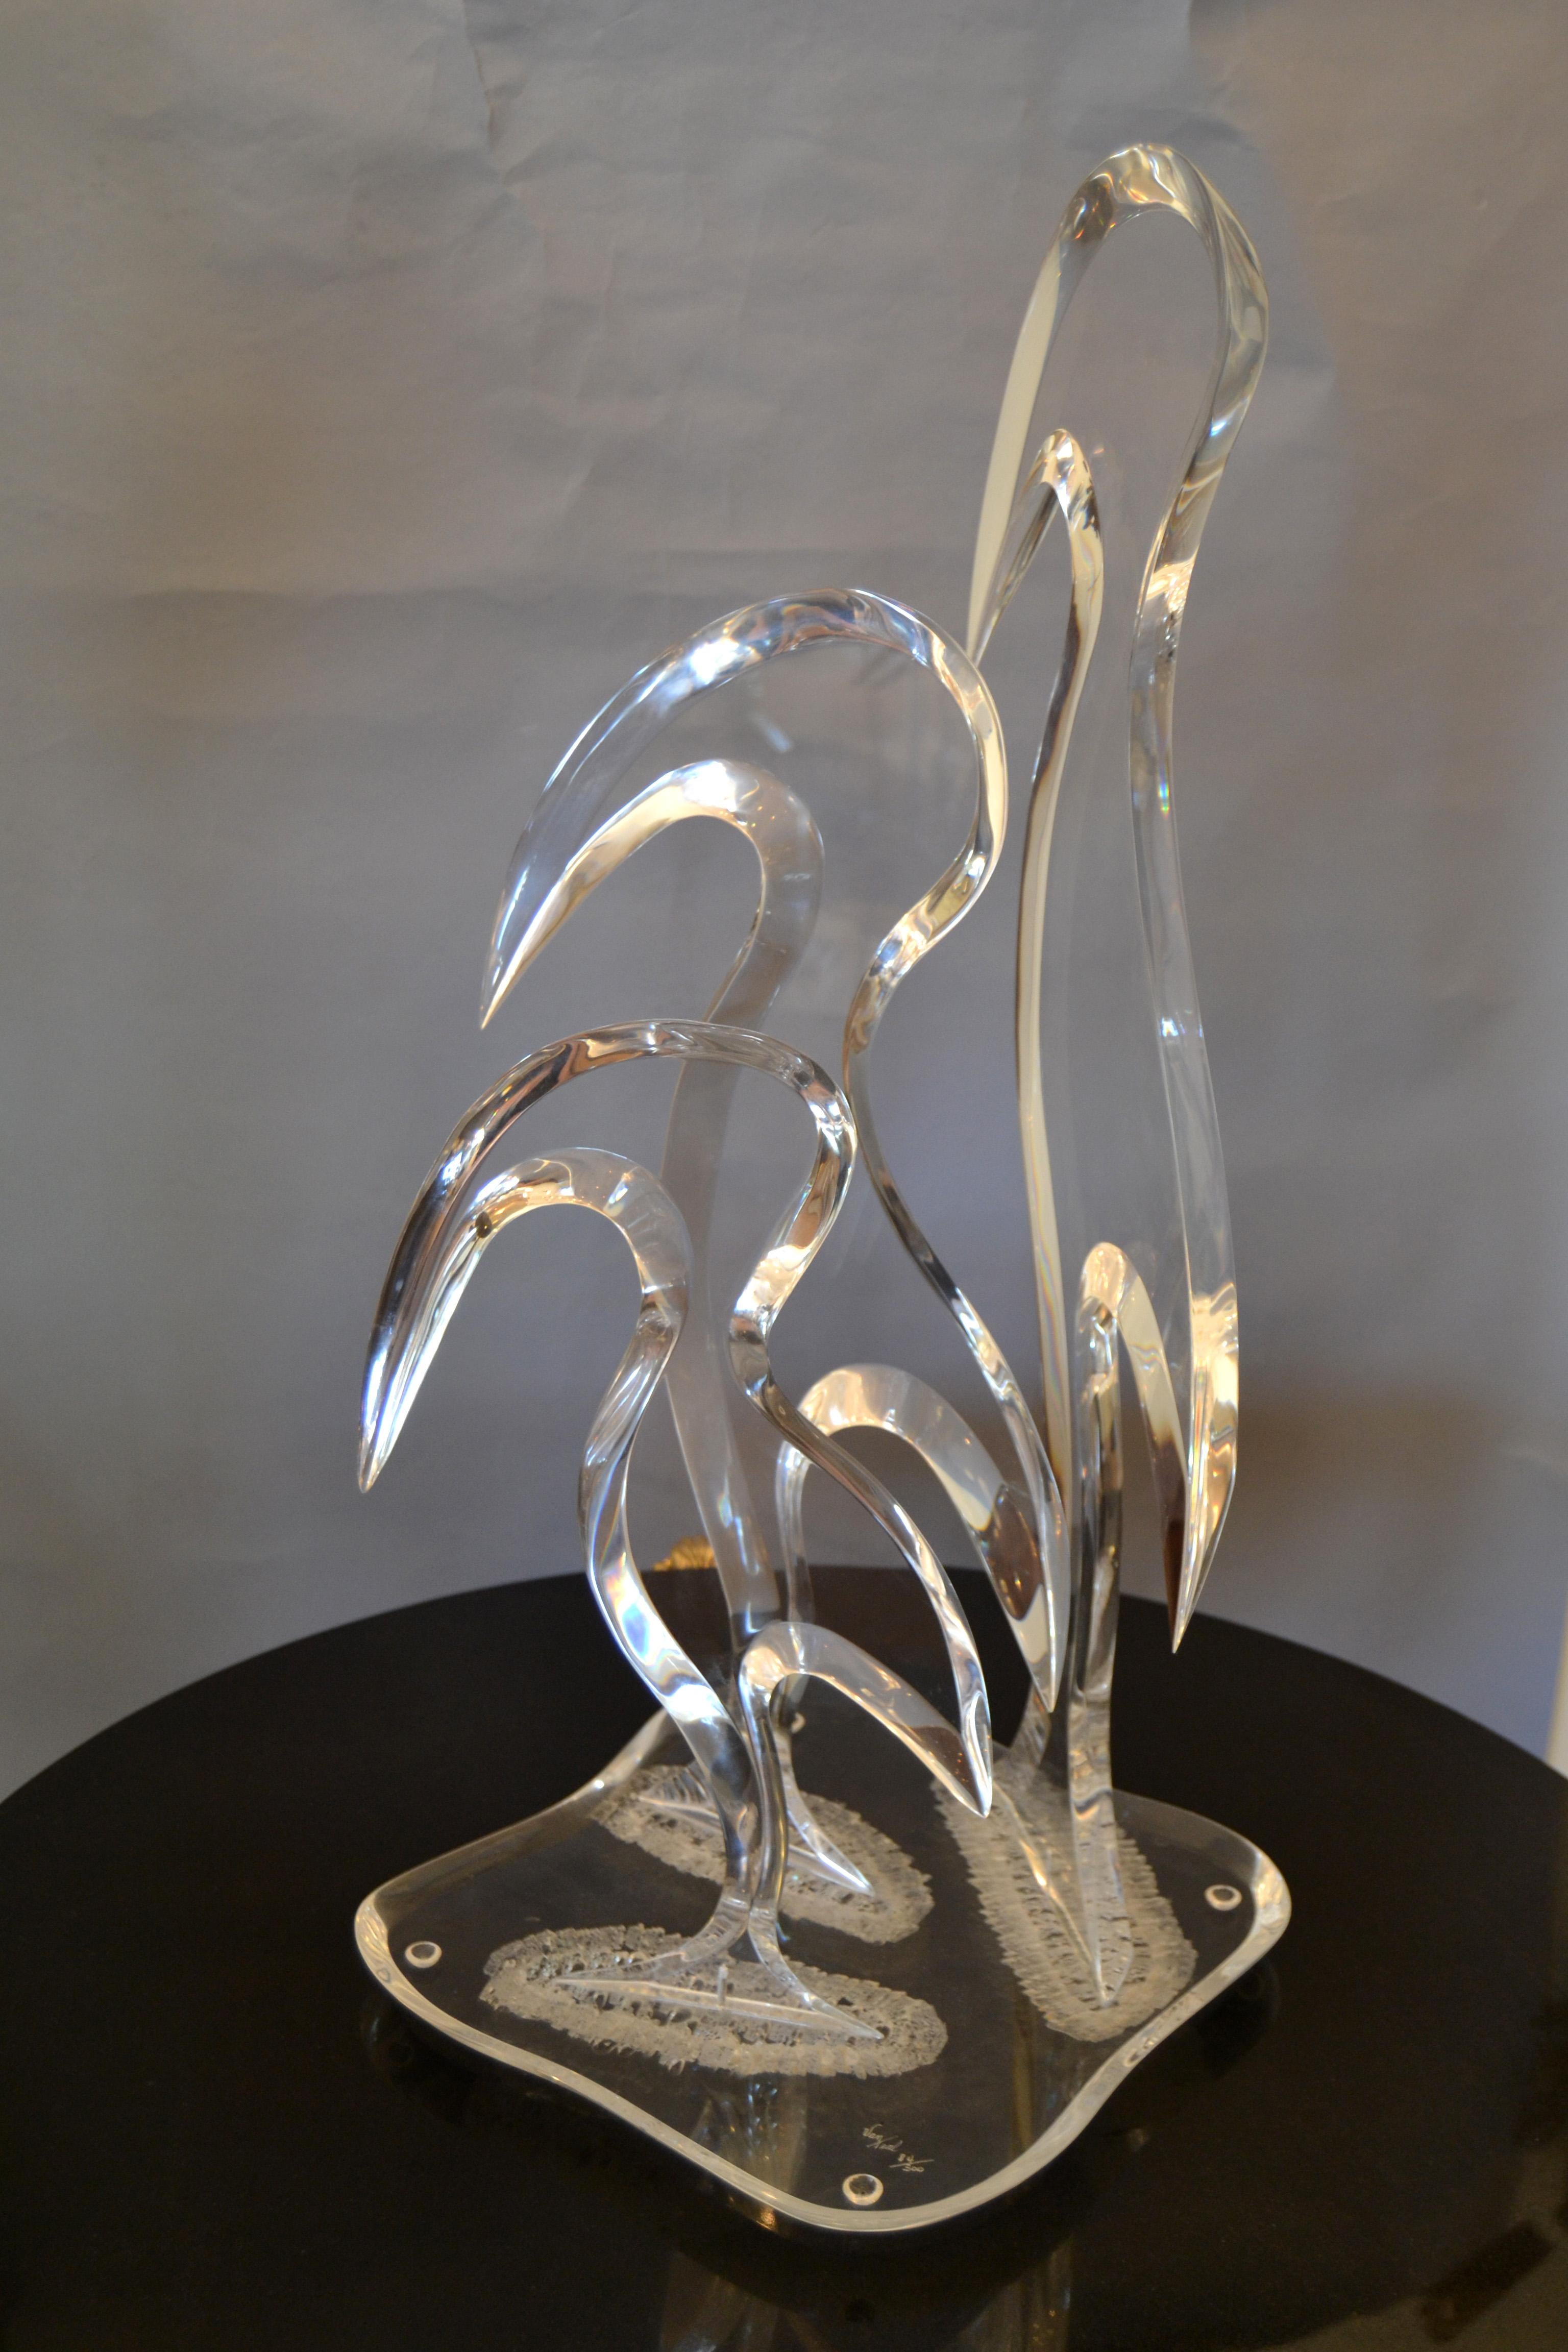 Sculpture de table moderne en Lucite sarcelle de Hivo G. van, représentant trois oiseaux stylisés.
Elle est signée sur la base et numérotée 84/300. Les oiseaux en Lucite ont une épaisseur de 1,38 pouces. 
La sculpture est intéressante sous tous